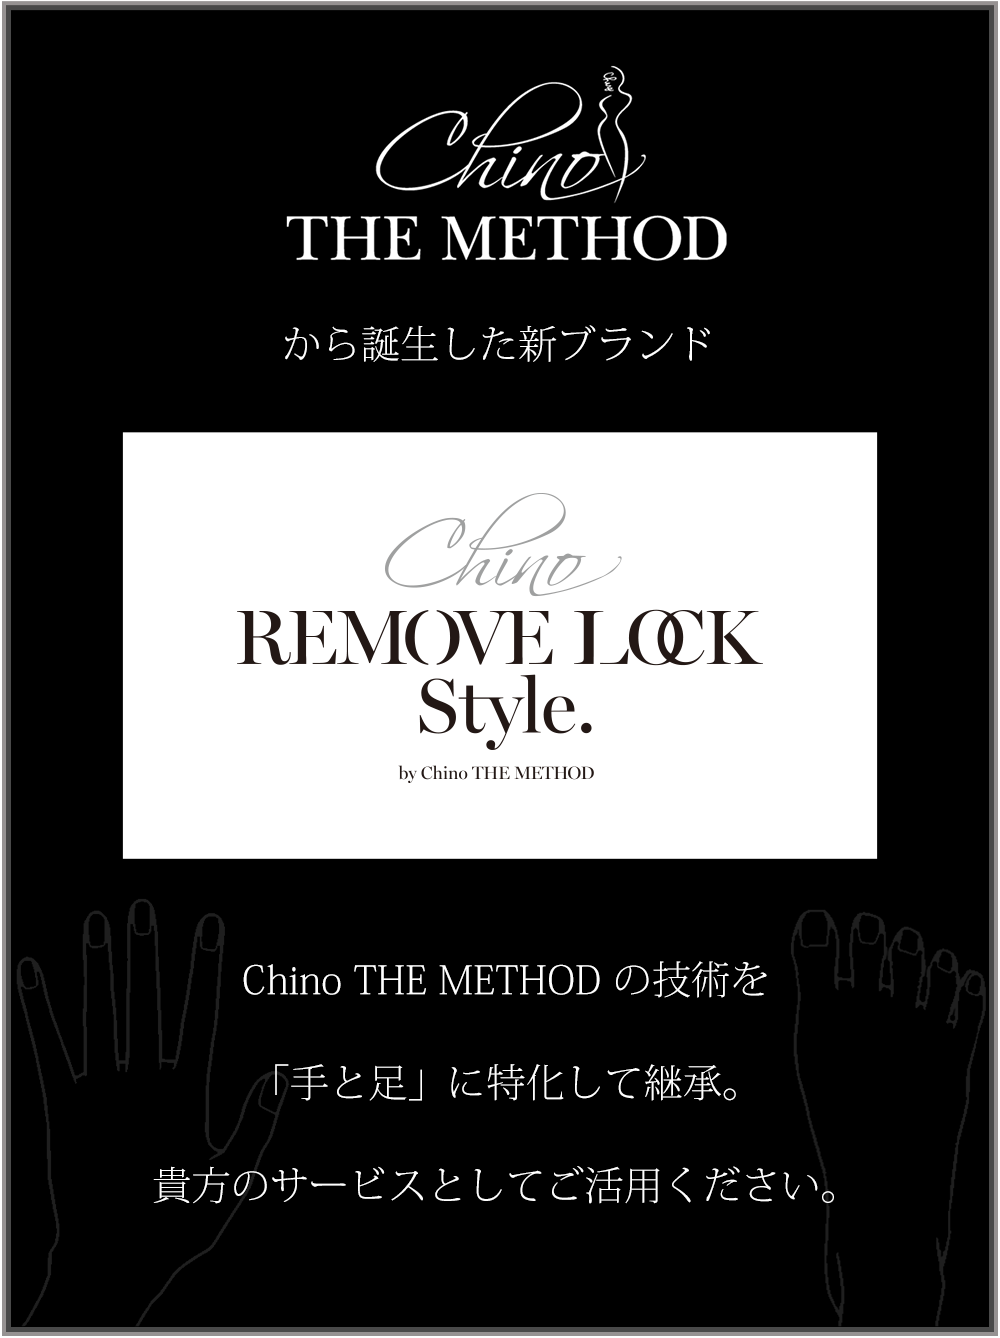 Chino THE METHOD から誕生した新ブランド、REMOVE LOCK Style.